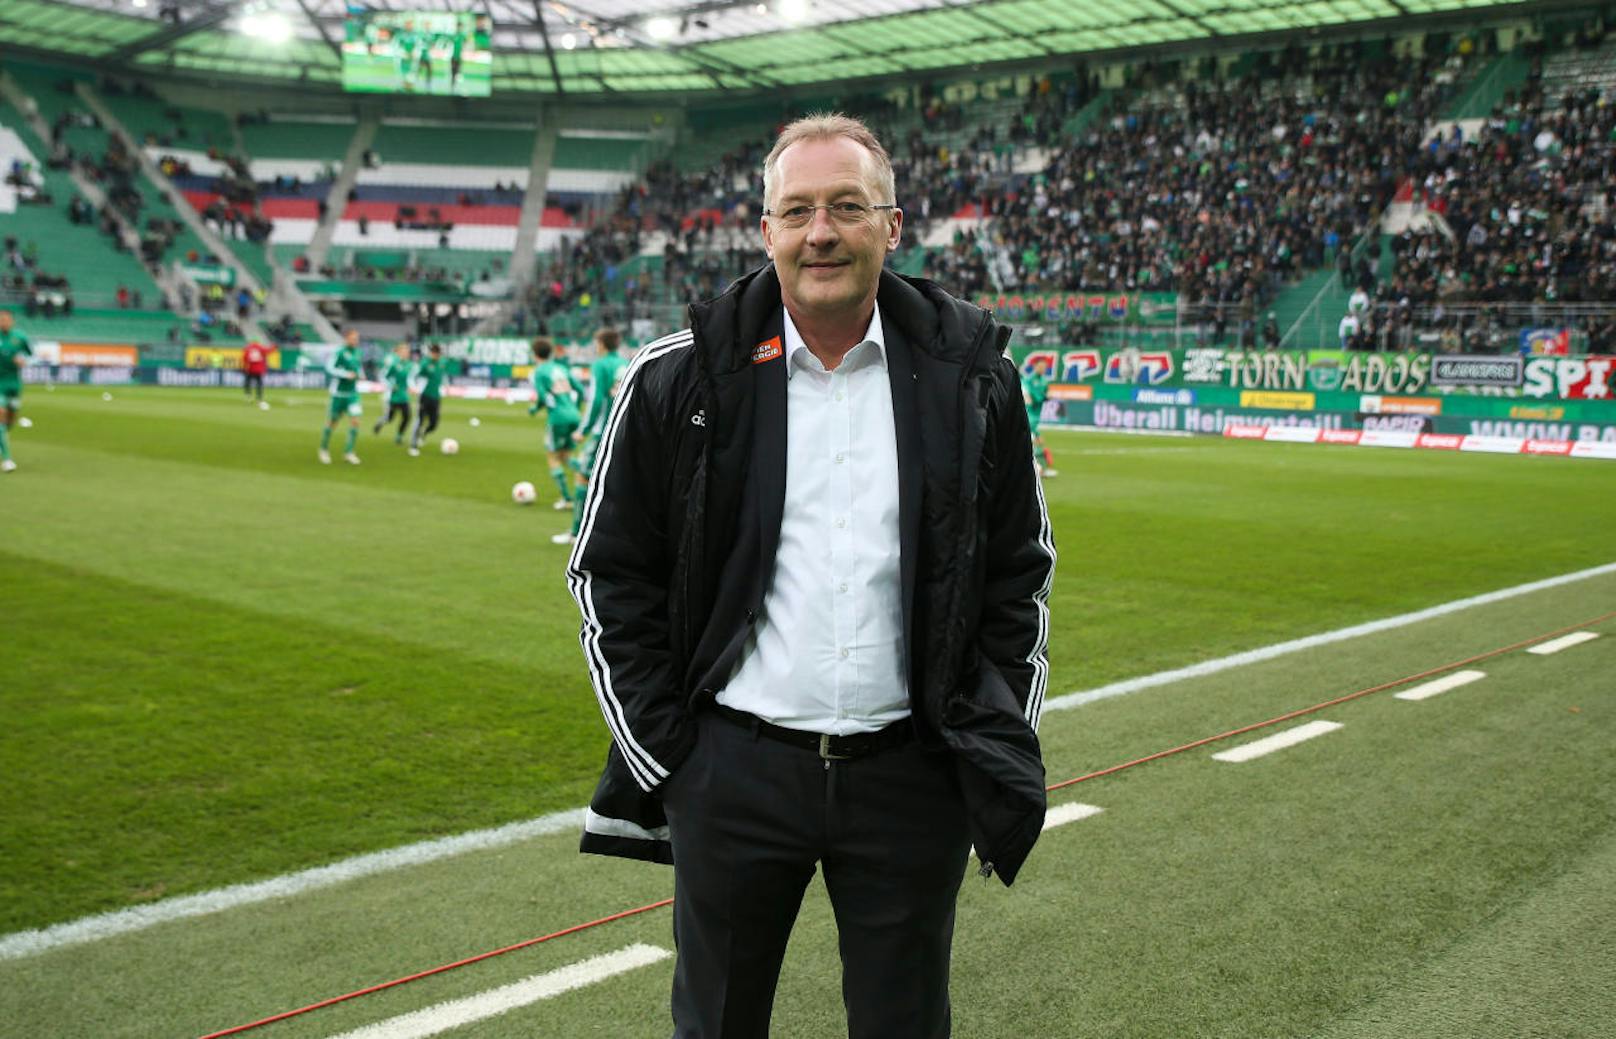 Am 10. Dezember stand schließlich auch der neuen Geschäftsführer Sport fest.  Die Wahl fiel auf den 51-jährigen Schweizer Fredy Bickel, der zuvor als Sportchef bei den Young Boys Bern tätig war.